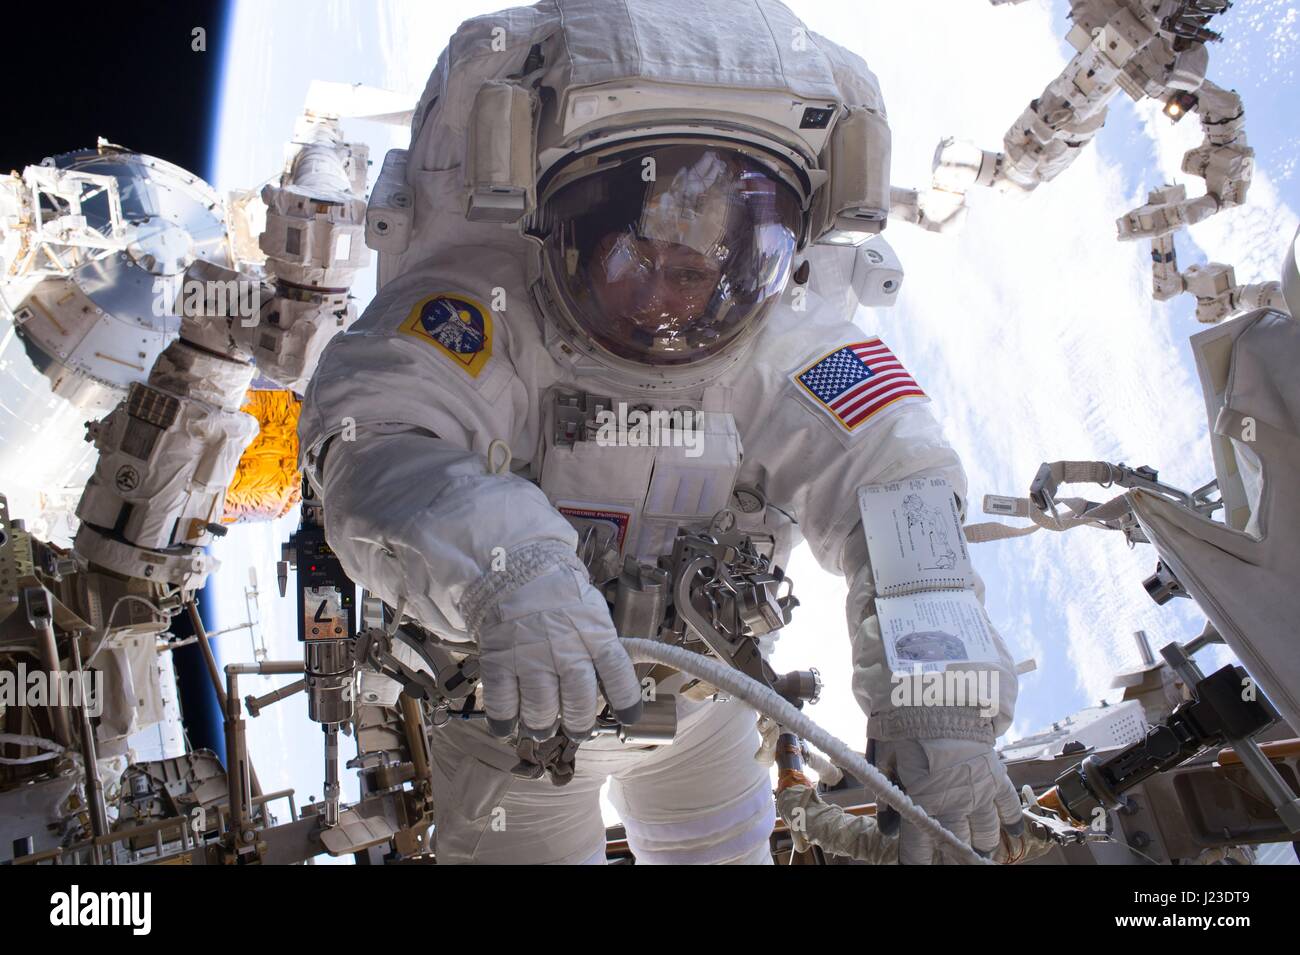 NASA-Expedition 50 erstklassige Besatzung Astronaut, die amerikanische Peggy Whitson auf der internationalen Raumstation in der Erdumlaufbahn während einem Weltraumspaziergang 6. Januar 2017 funktioniert.    (Foto von der NASA über Planetpix) Stockfoto